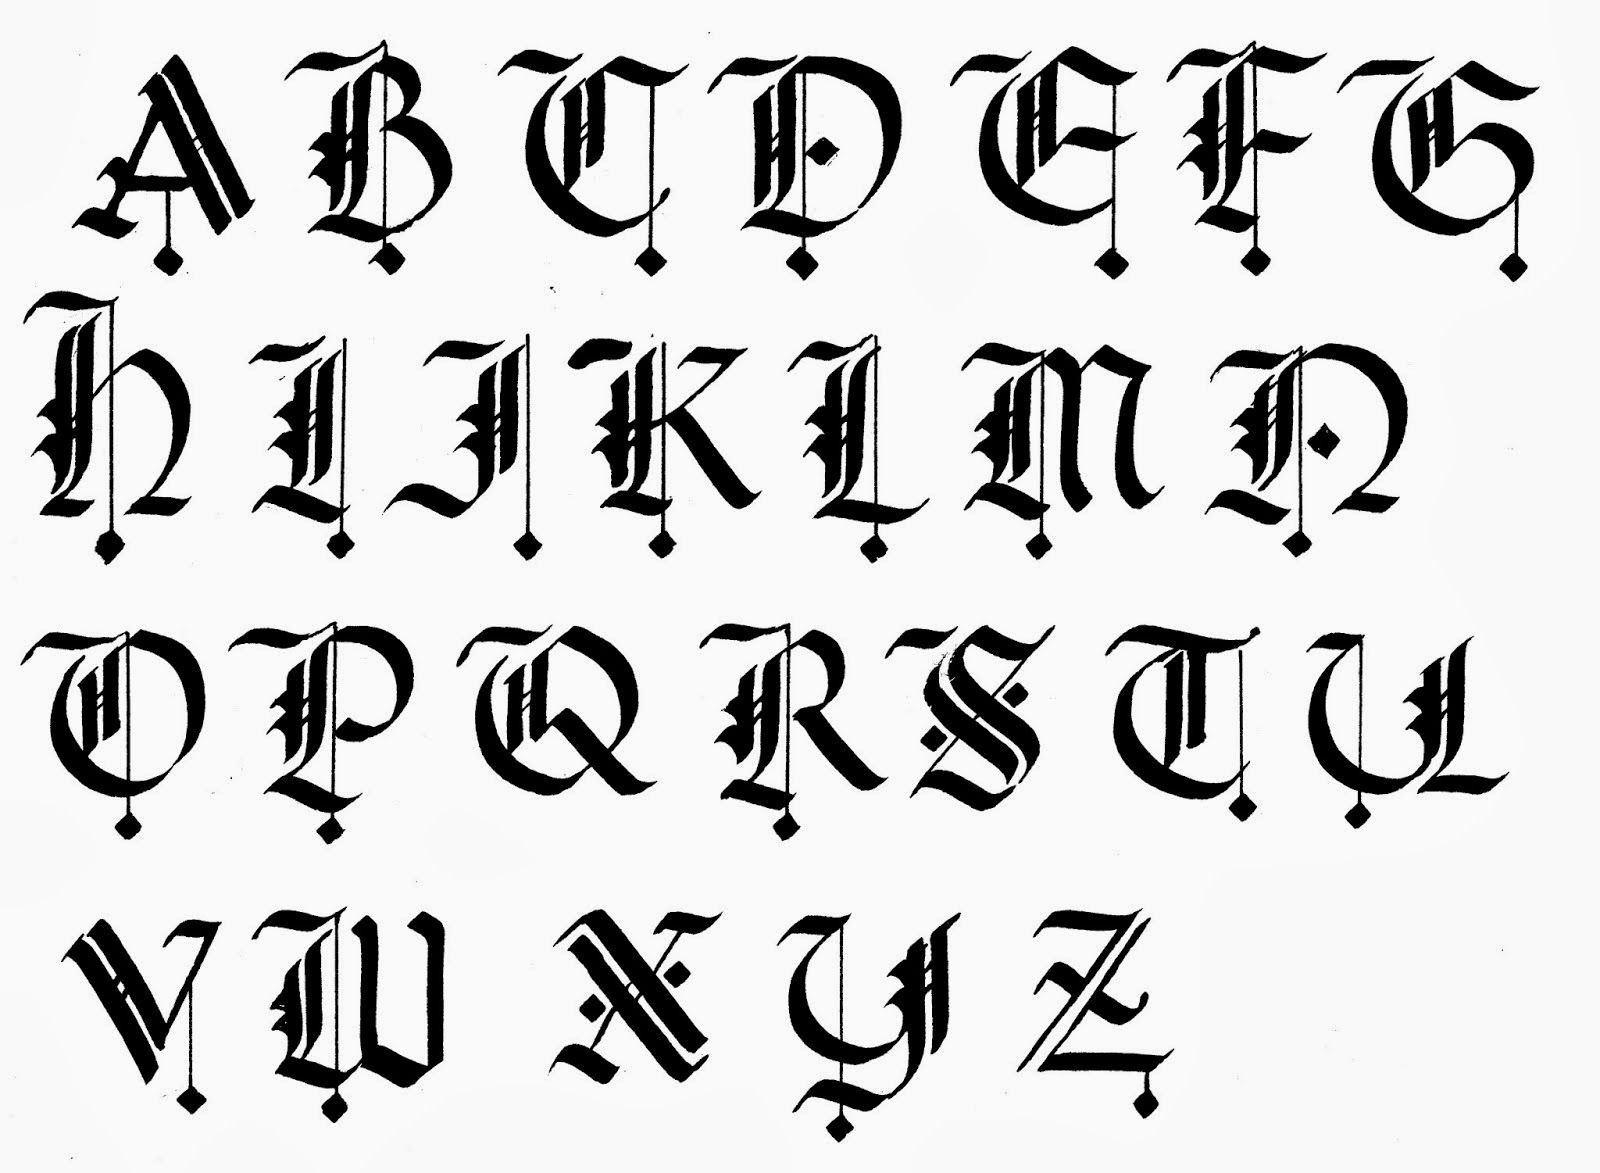 Volkswagen font alphabet styles